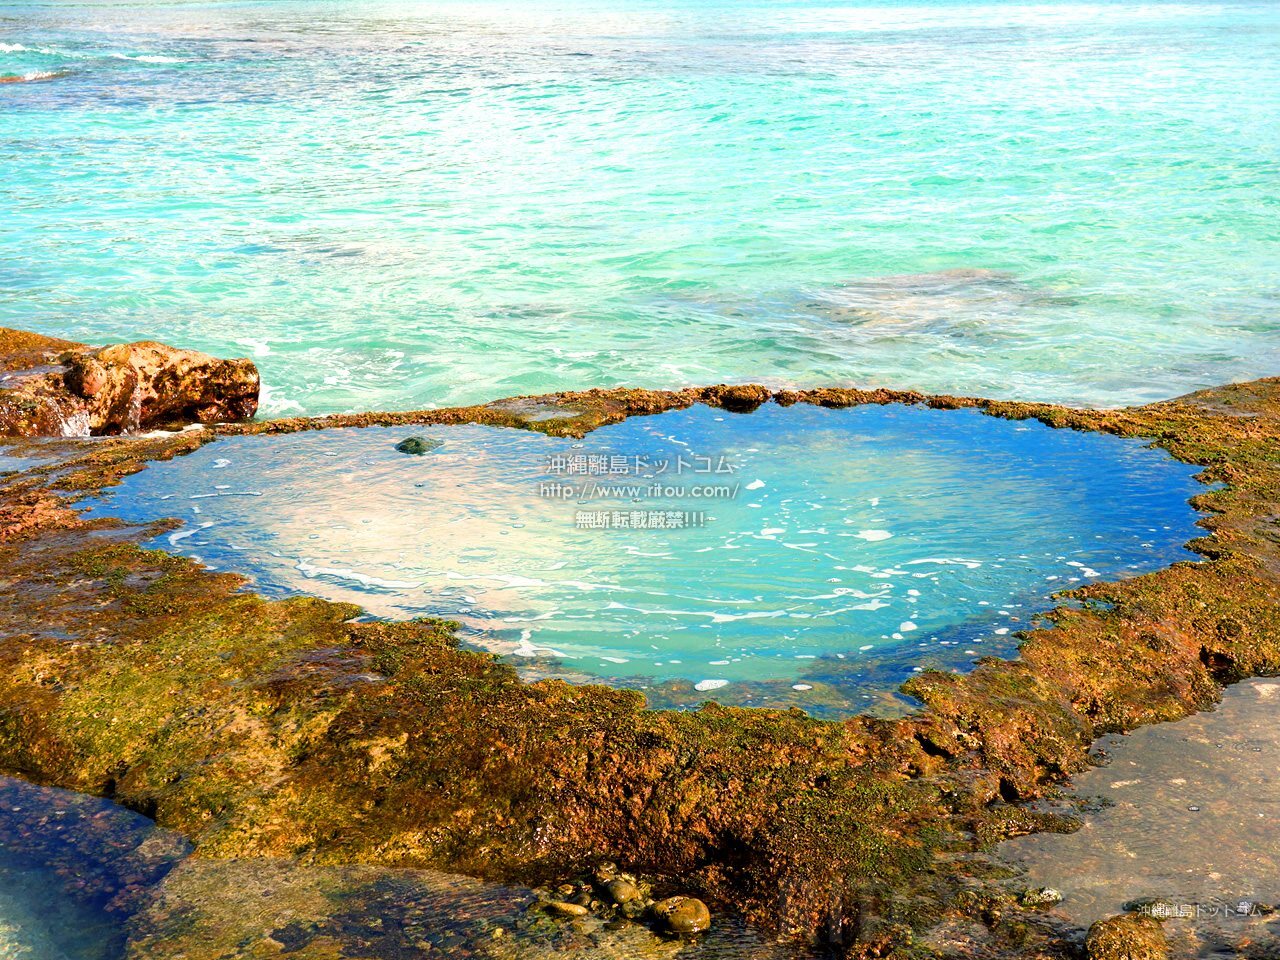 アクアマリン色のハート岩 奄美大島には青く輝くハートロックがある 奄美奄美大島の旅行記 旅行ガイド